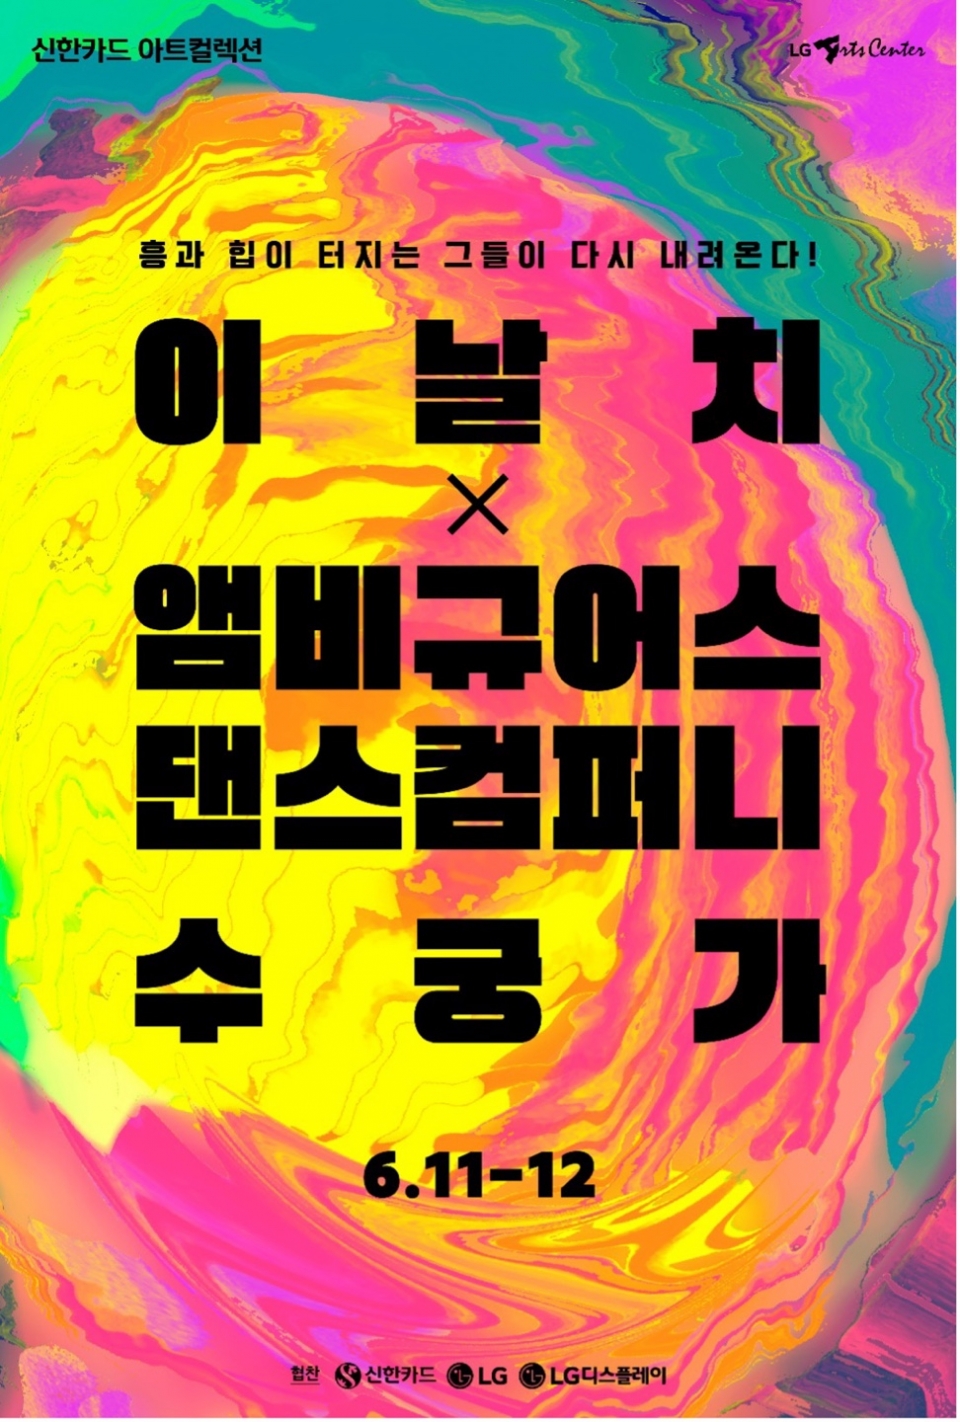 이날치 밴드 X앰비규어스 댄스 컴퍼니 공연 포스터 (제공=LG아트센터)